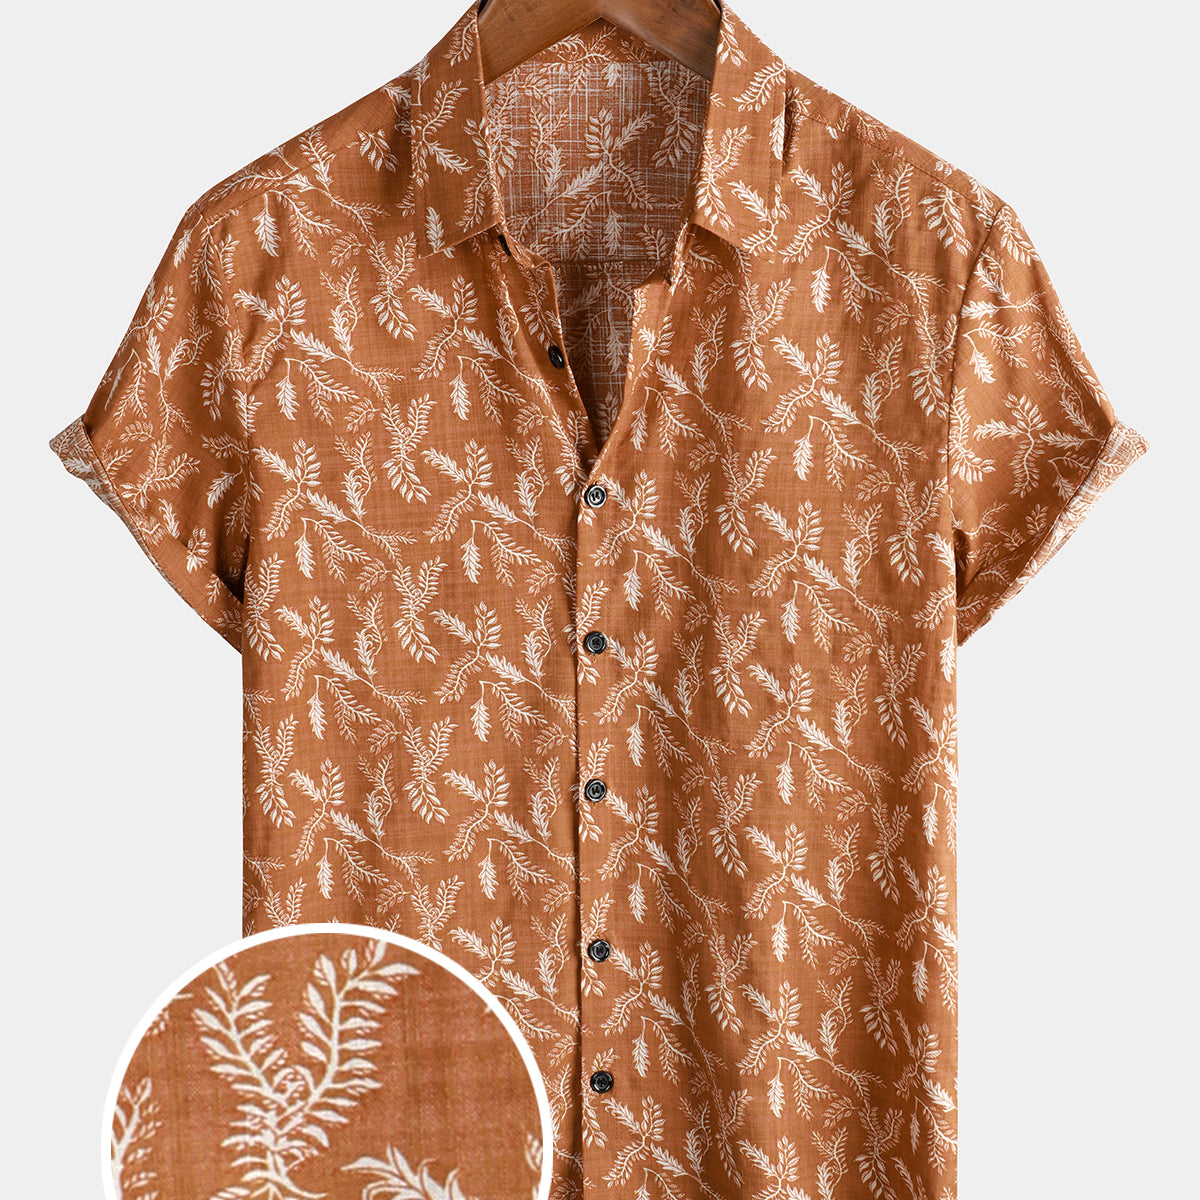 Camisa con botones transpirable de manga corta retro de algodón para vacaciones con flores marrones vintage con estampado floral para hombres